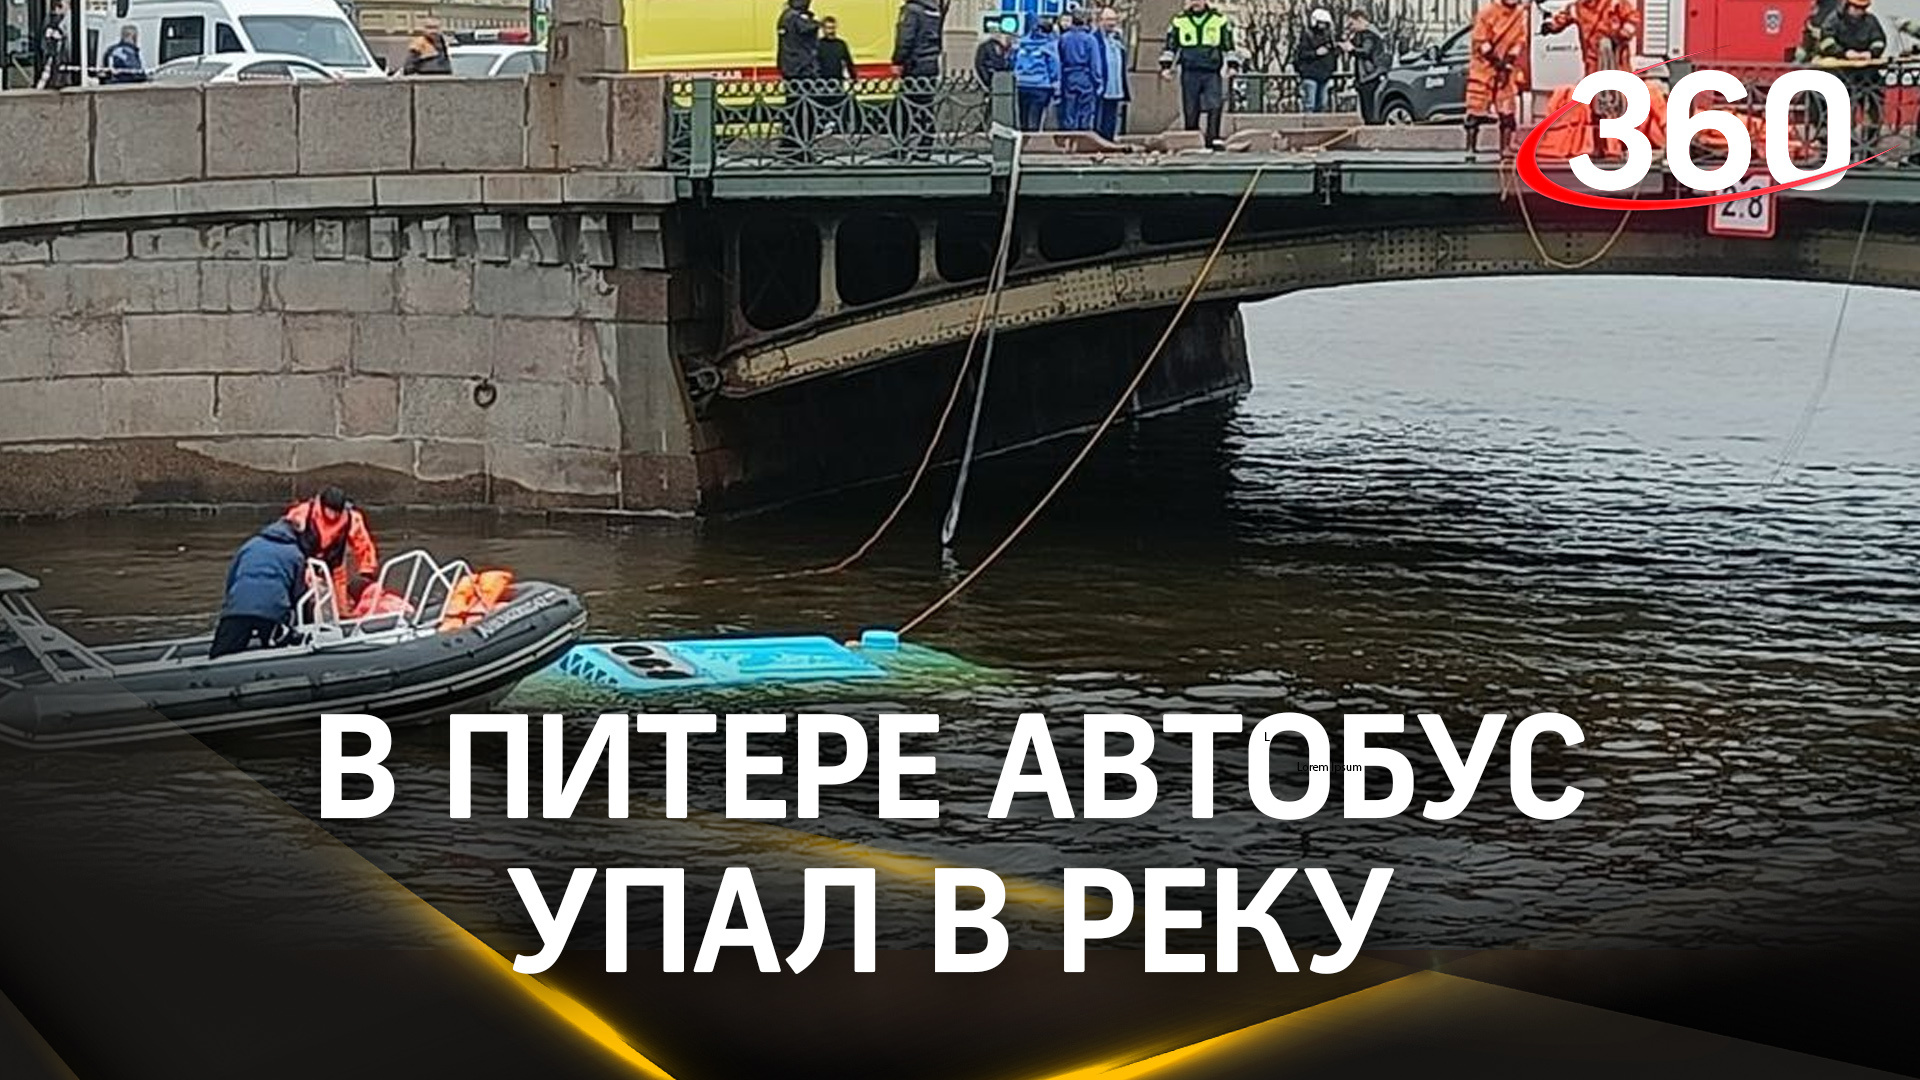 Автобус с пассажирами упал в Мойку в Санкт-Петербурге